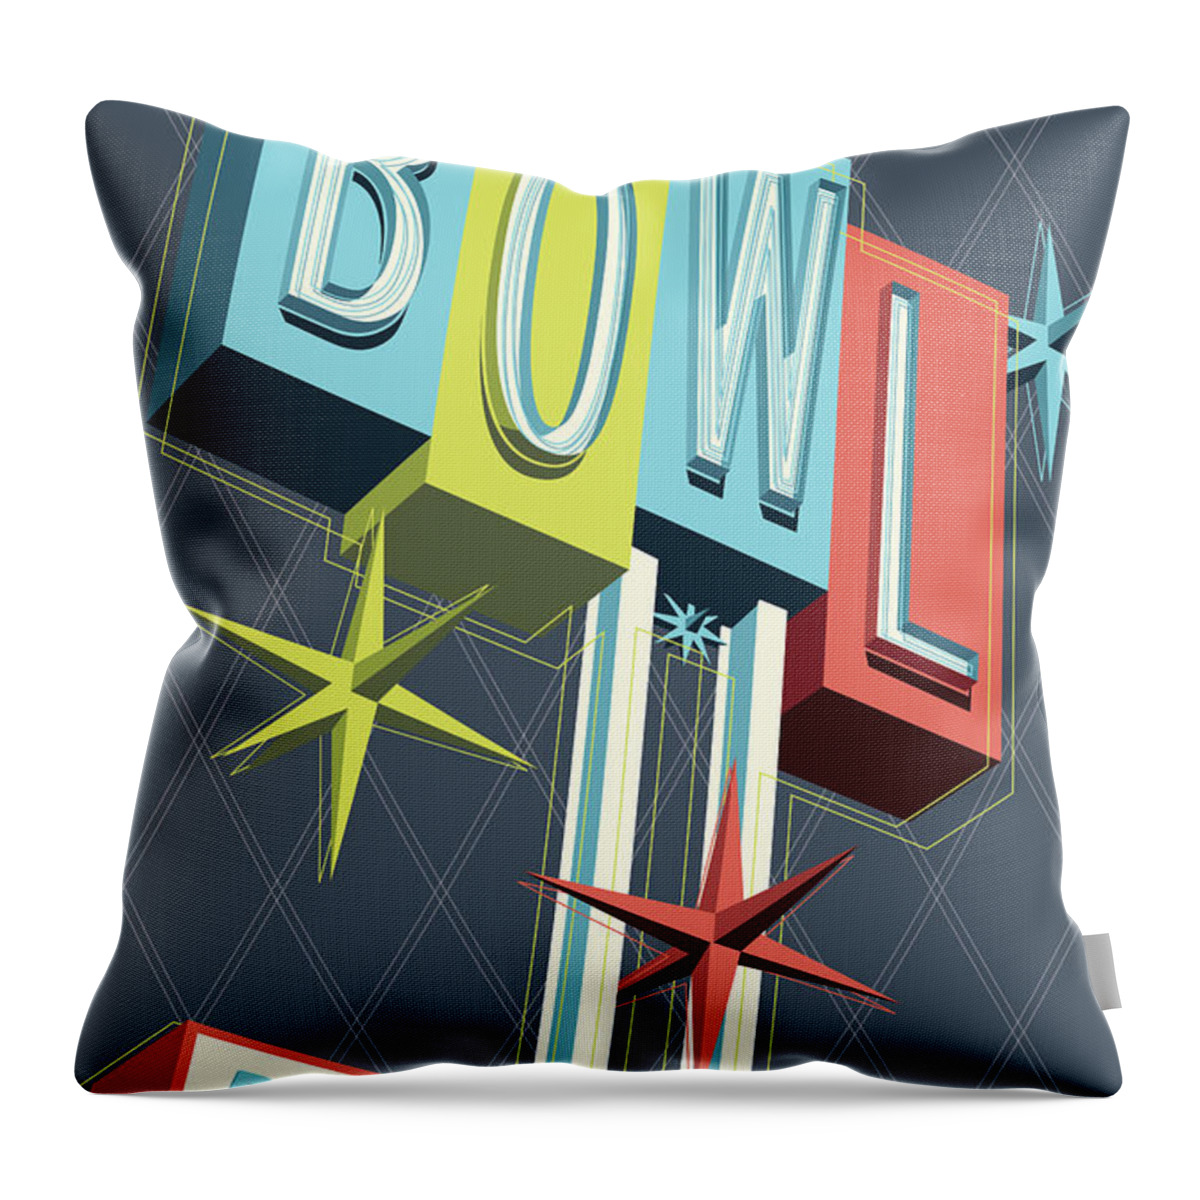 Pop Art Throw Pillow featuring the digital art Premiere Lanes Bowling Pop Art by Jim Zahniser